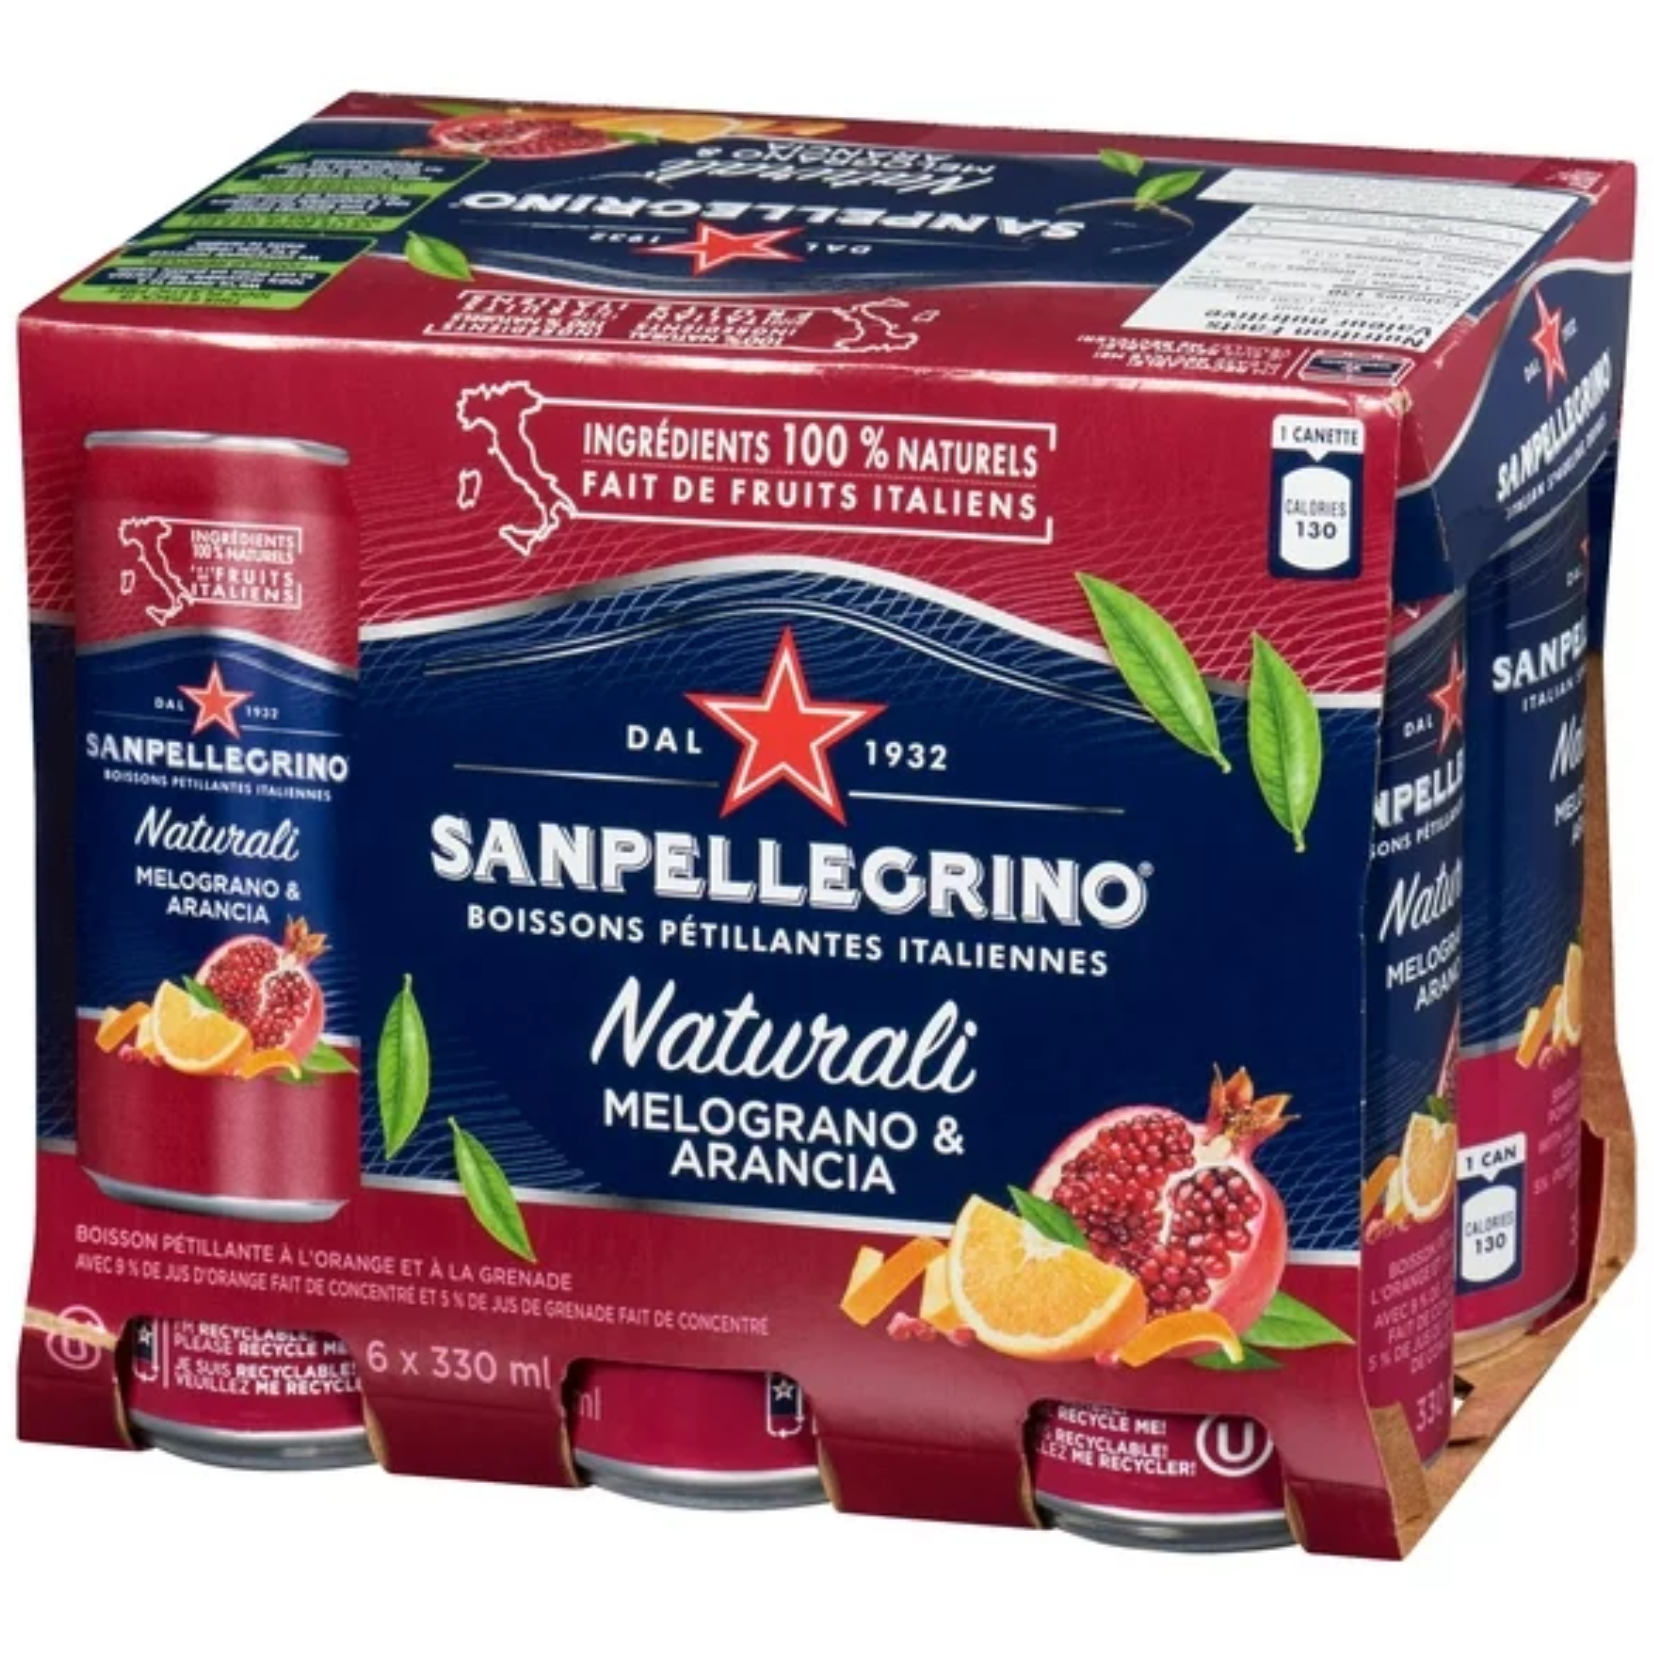 San Pellegrino Naturali Melograno & Arancia Sparkling Orange and Pomegranate Beverage 330ml x 6